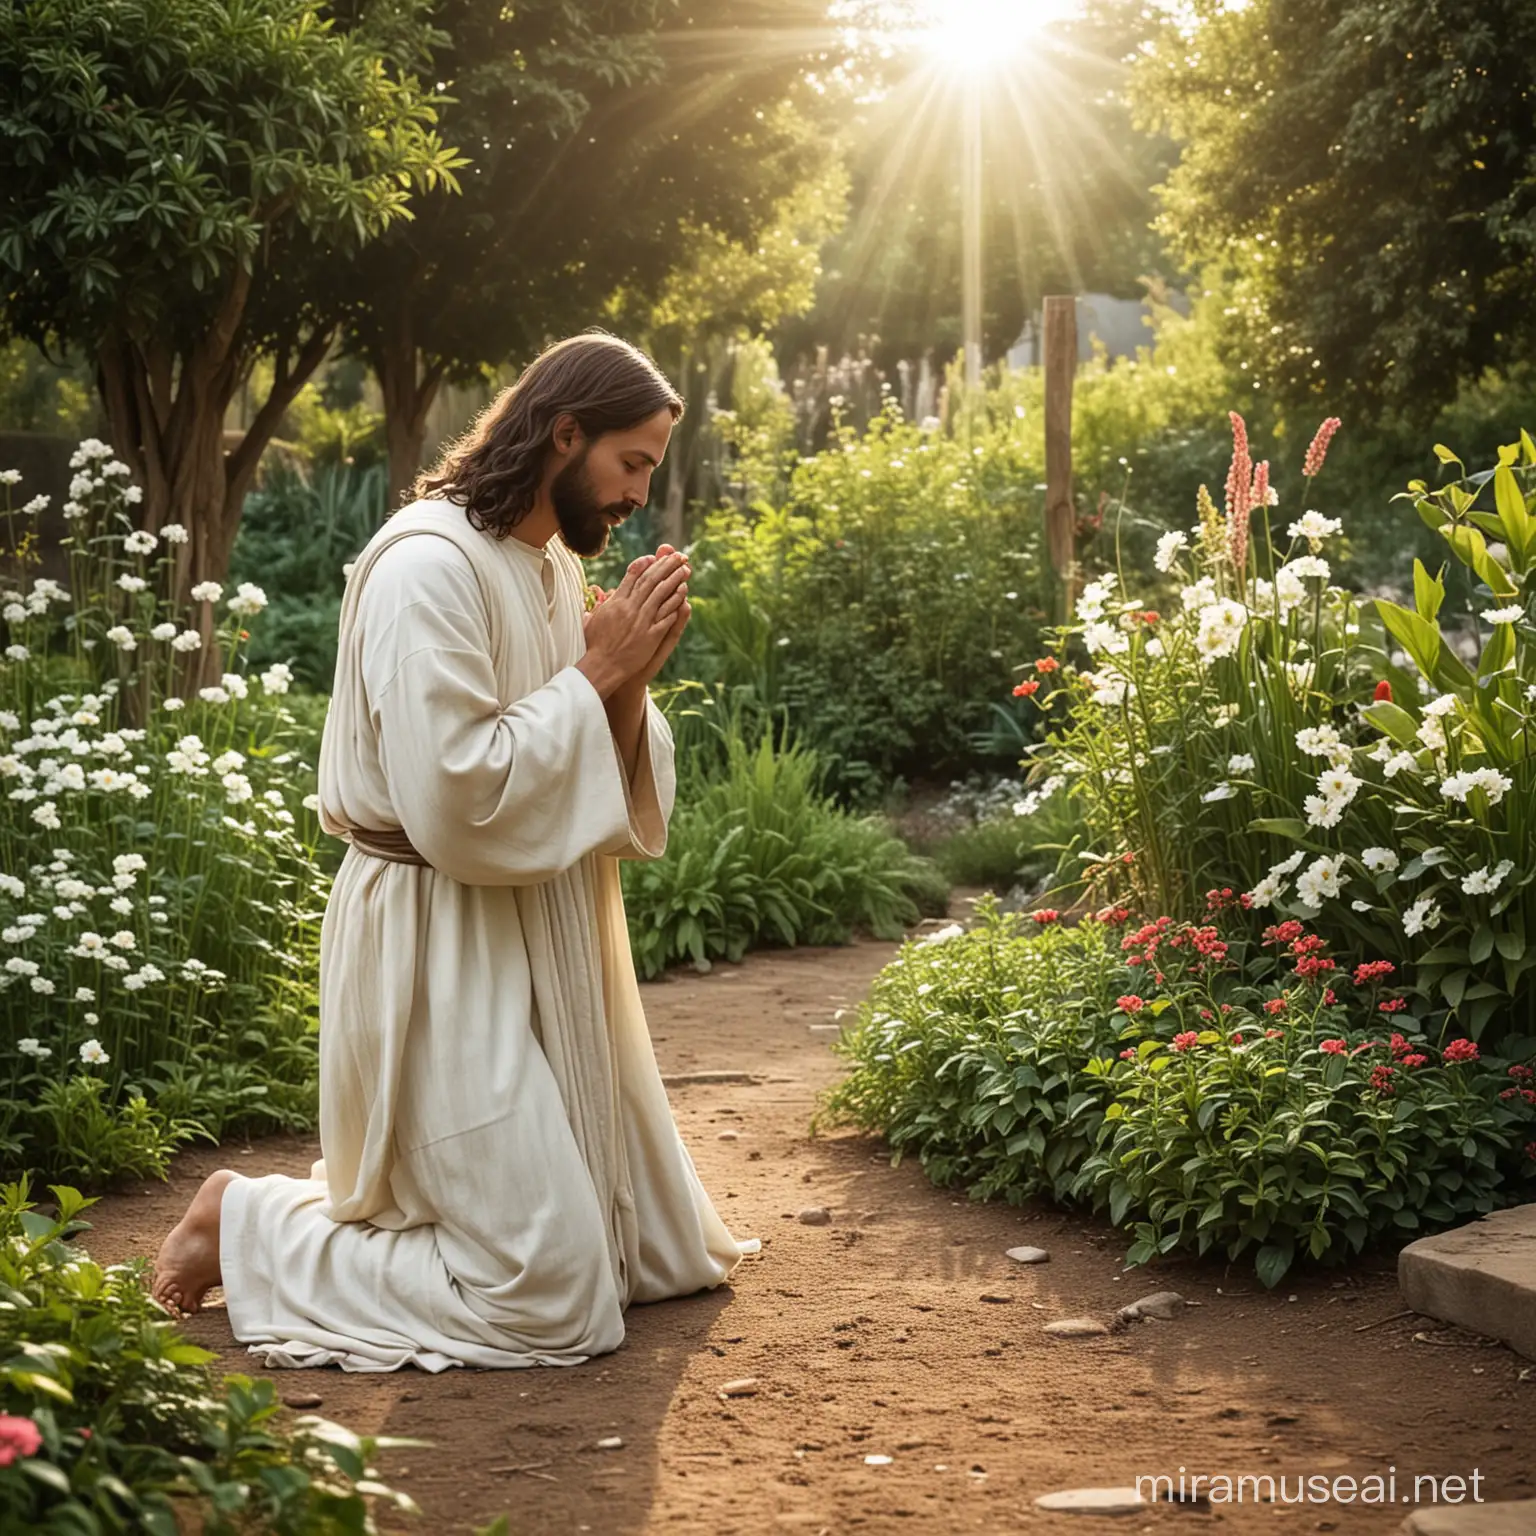 Jesus Praying in Serene Garden Setting